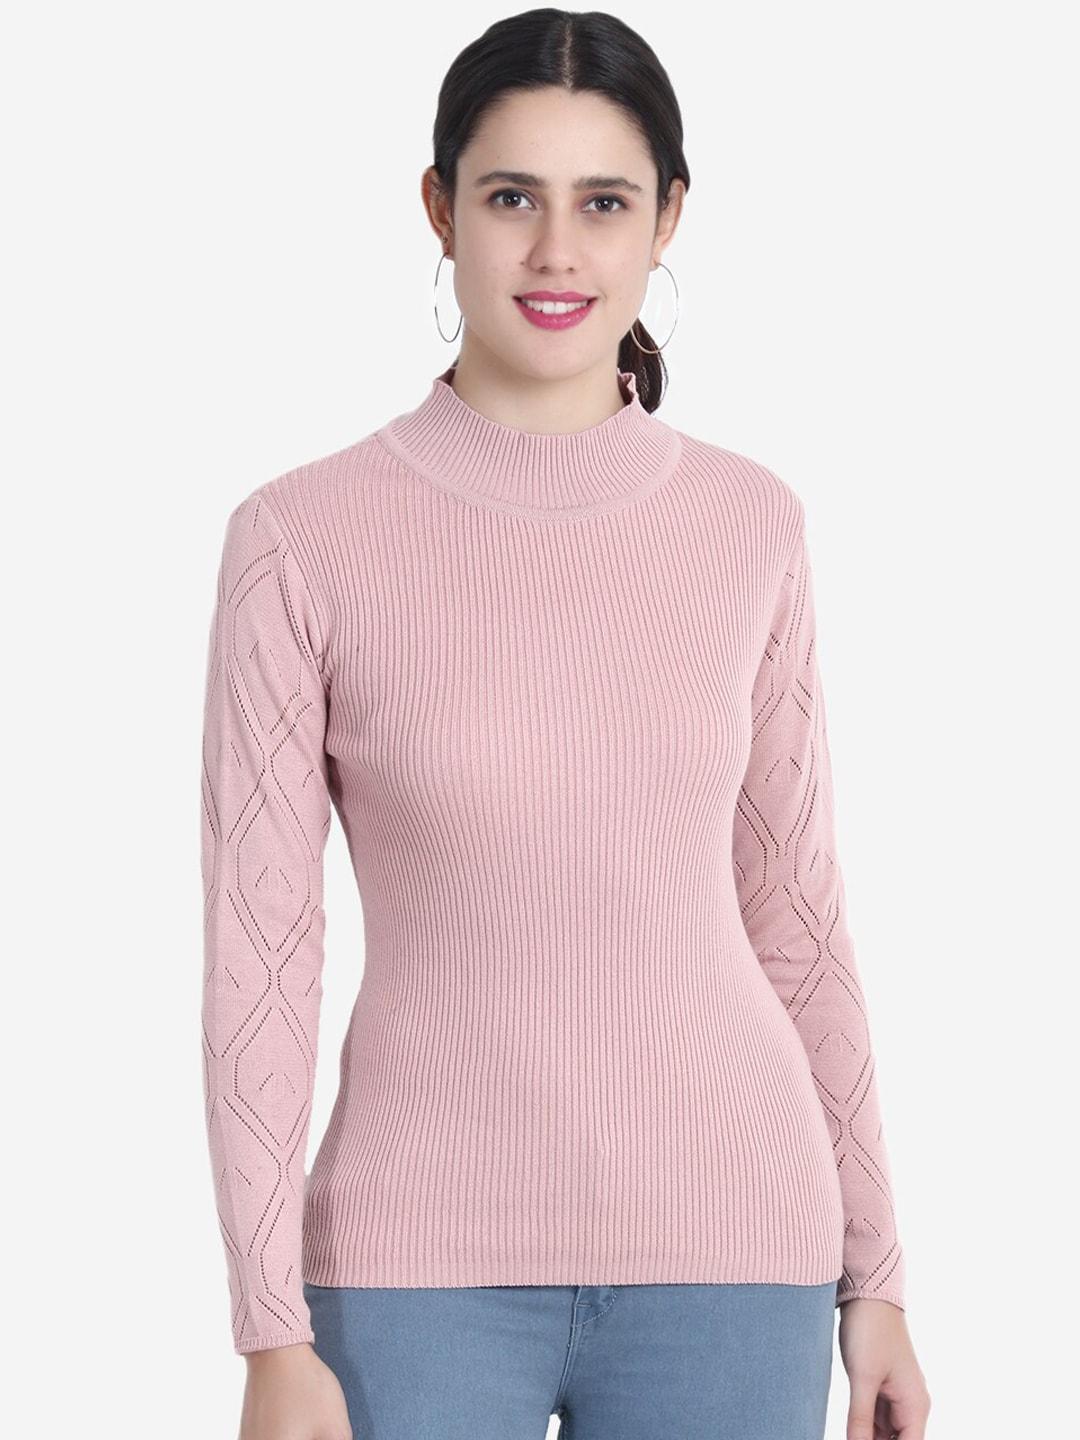 joe-hazel-women-pink-ribbed-pullover-sweater